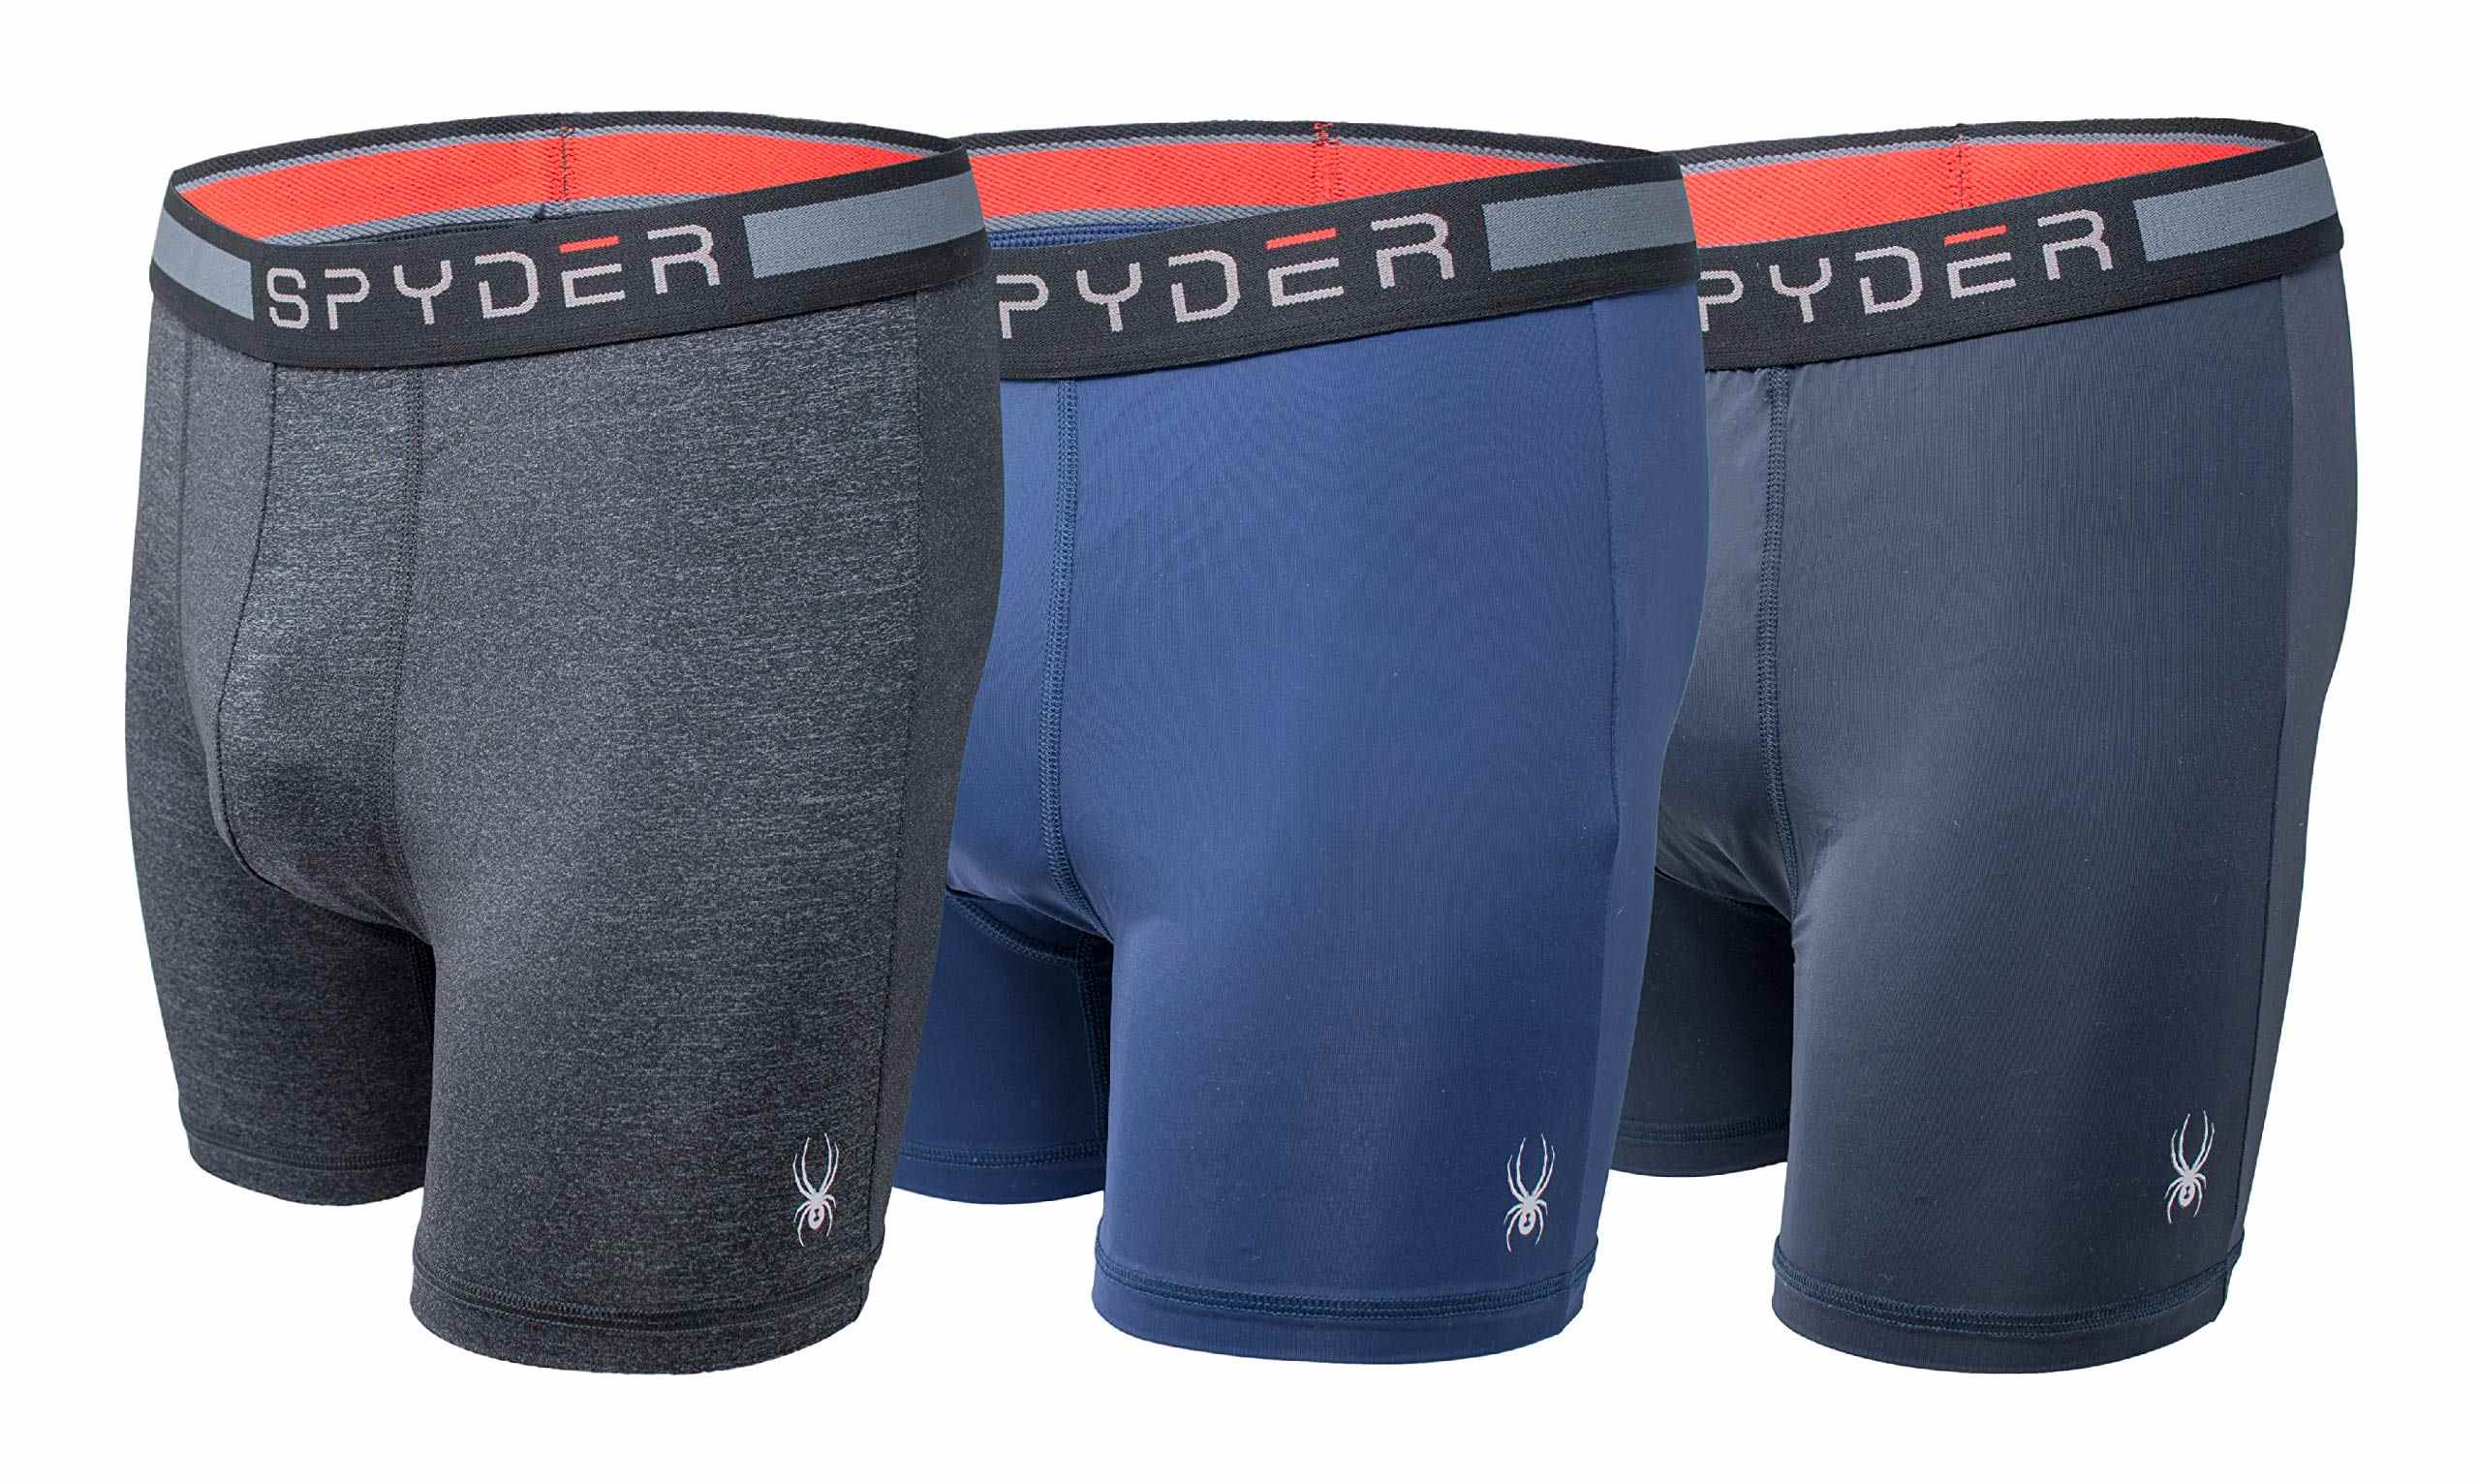 11 Amazing Spyder Men’s Underwear for 2023